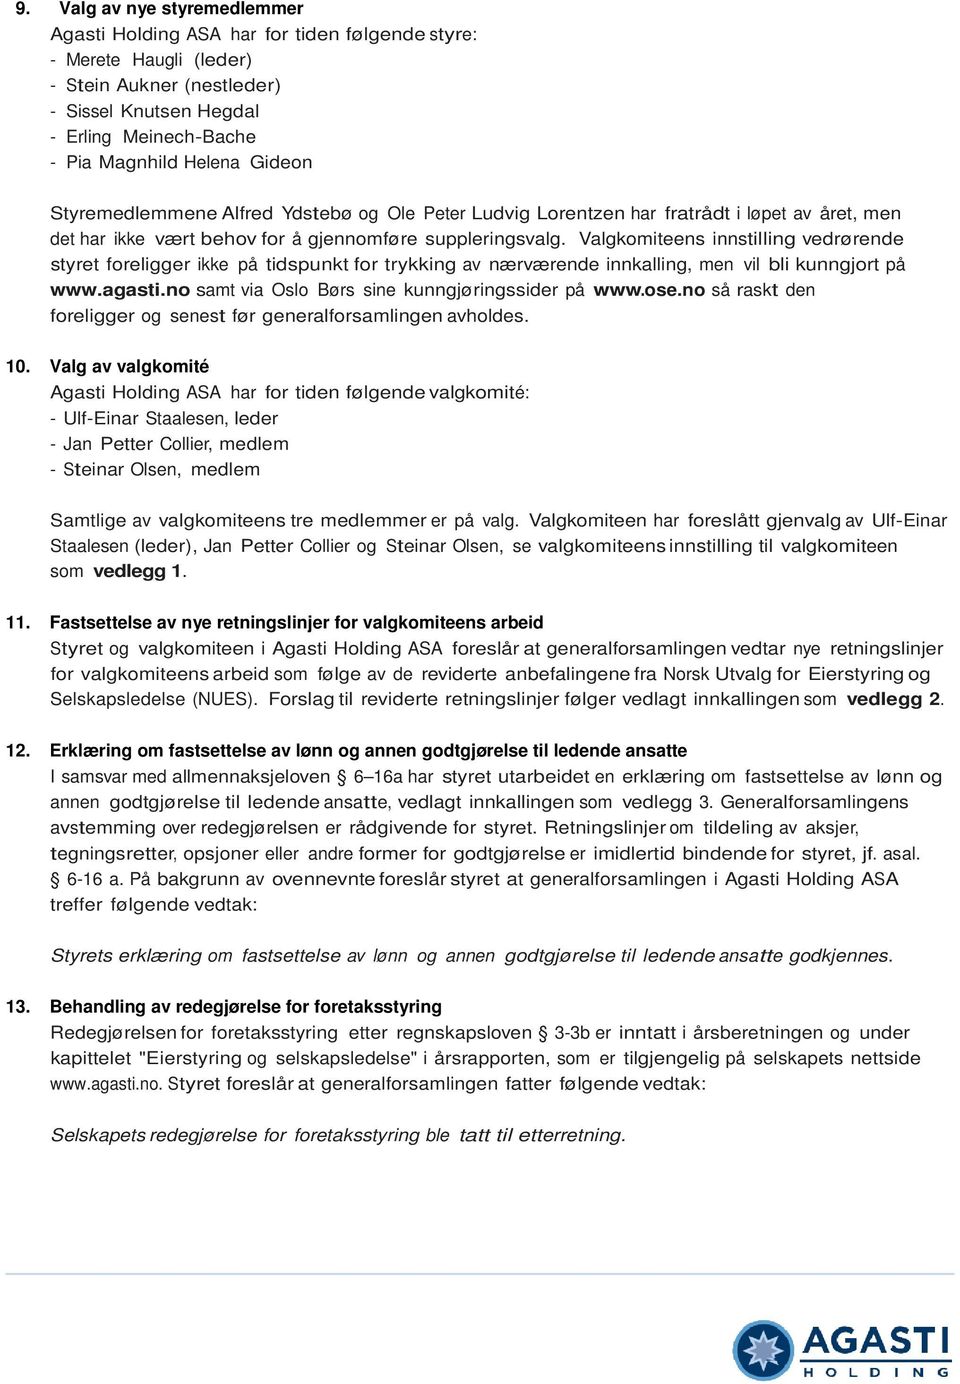 Valgkomiteens innstilling vedrørende styret foreligger ikke på tidspunkt for trykking av nærværende innkalling, men vil bli kunngjort på www.agasti.no samt via Oslo Børs sine kunngjøringssider på www.